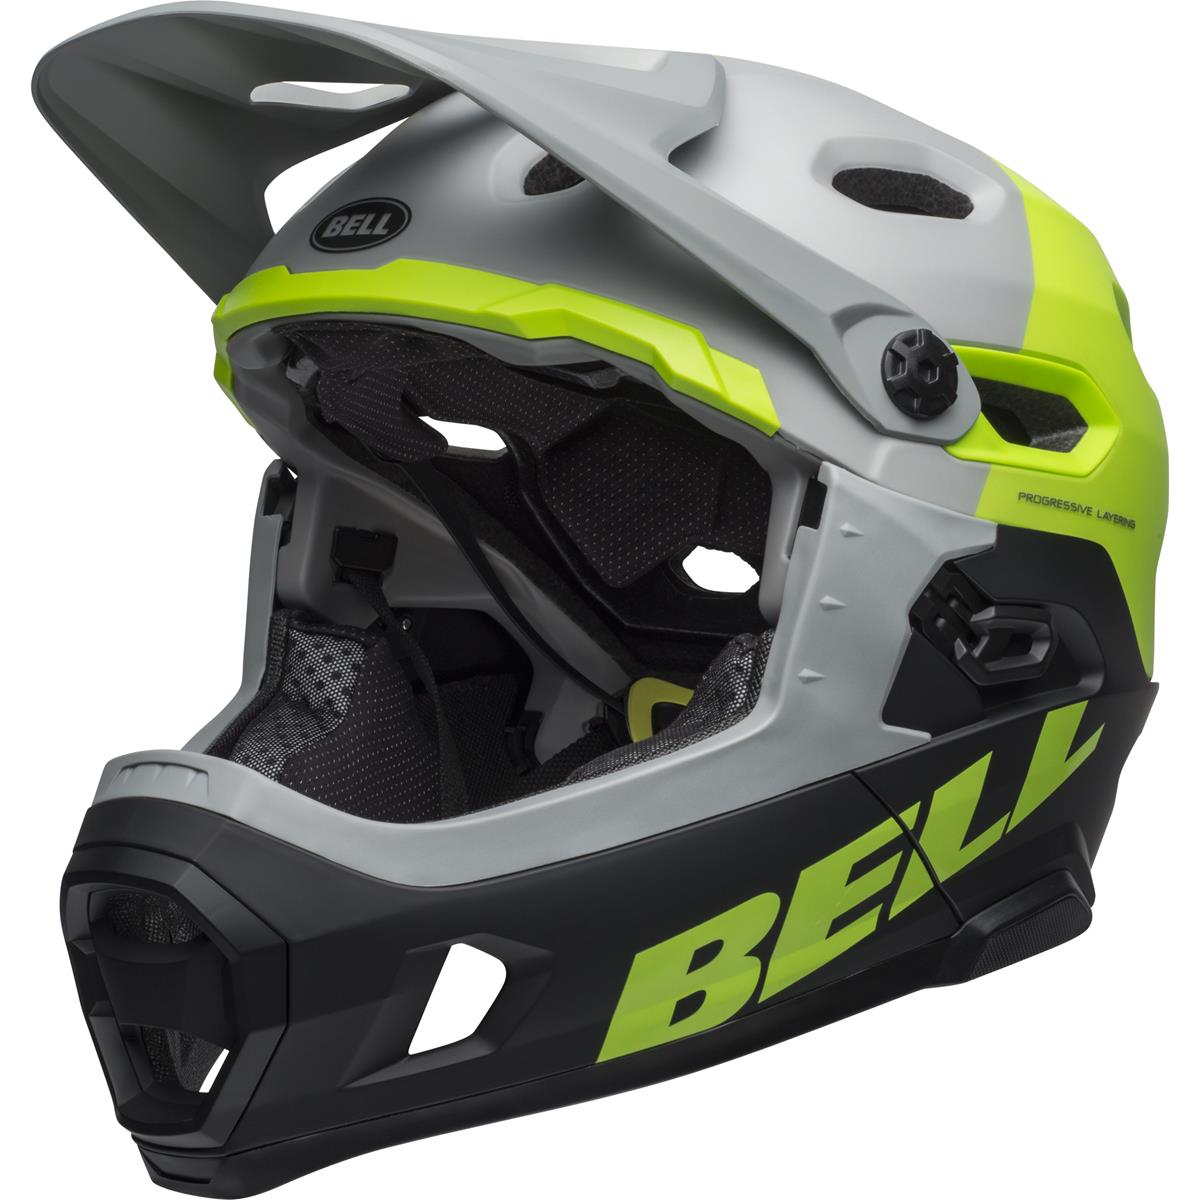 Bell Downhill-MTB Helm Super DH MIPS Matt/Gloss Dunkelgrau/Hellgrün/Schwarz